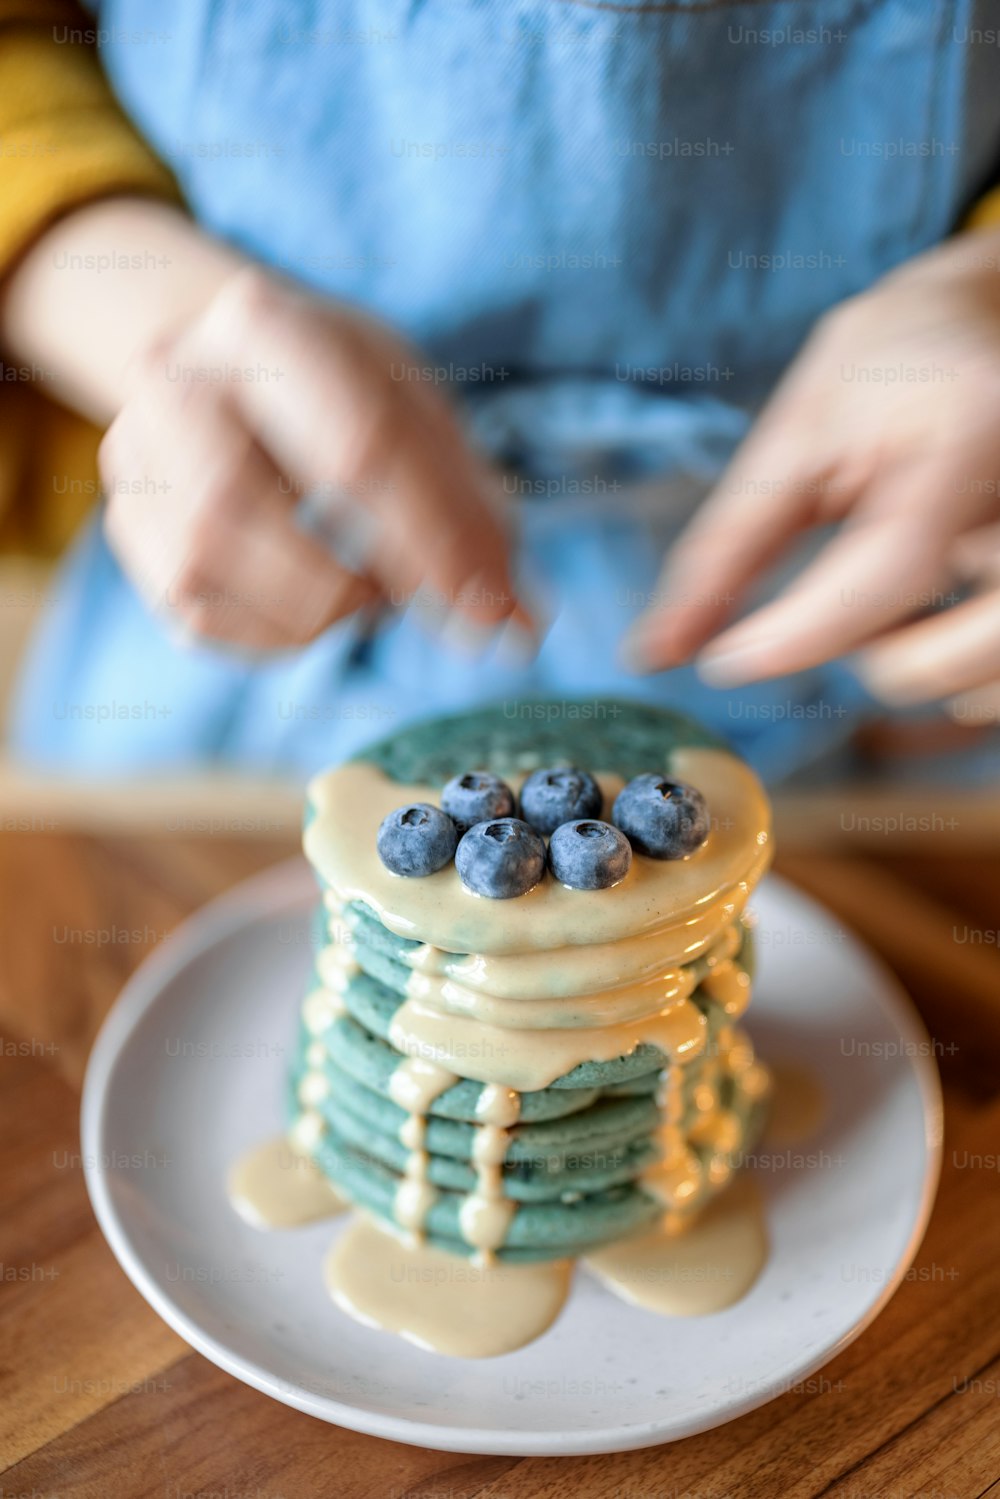 Mulher no avental azul decorar panquecas americanas azuis com mirtilo derramado com souse de caramelo na mesa de madeira. Comida caseira saborosa. Celebração de Shrovetide.